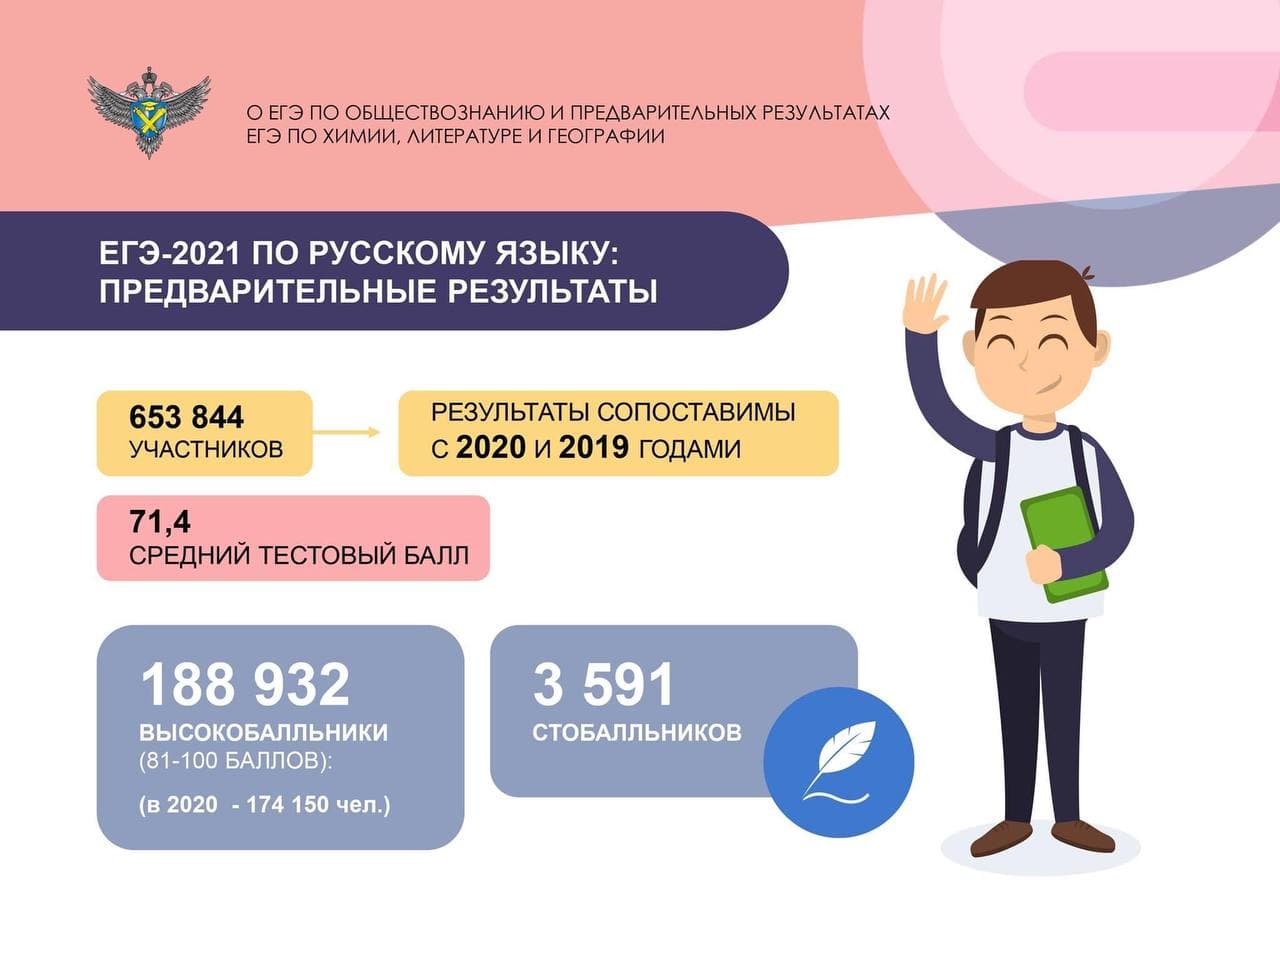 Результаты ЕГЭ по русскому языку